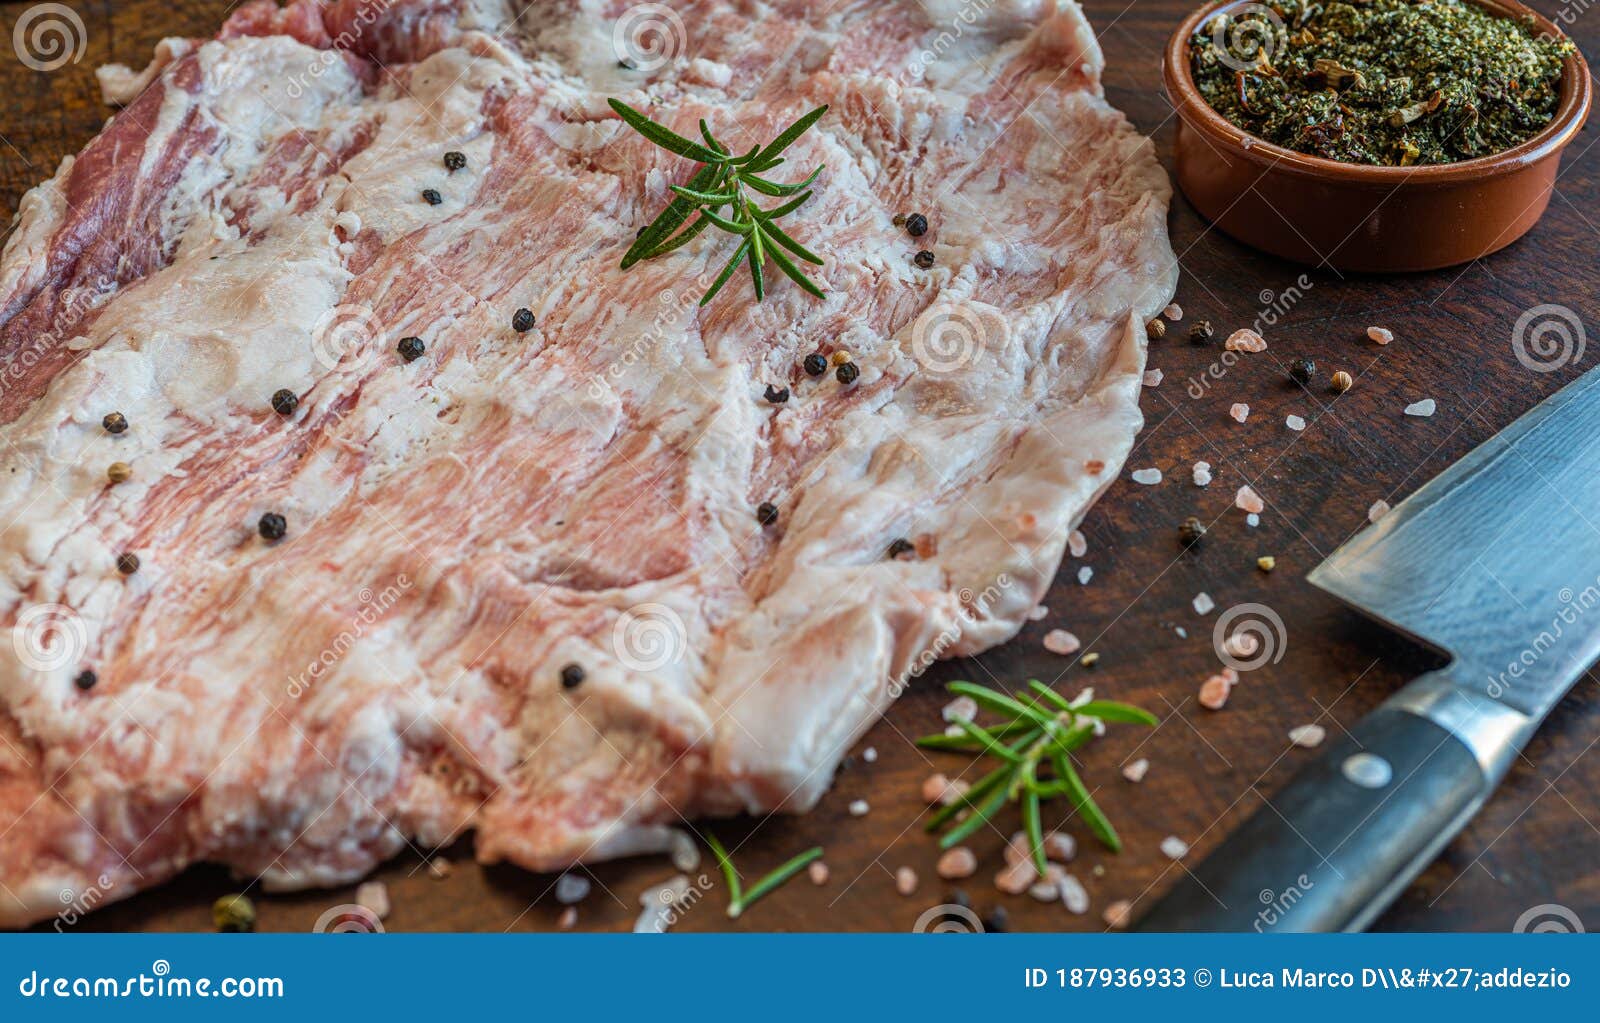 close up of raw pork secreto de ventresca pure iberico